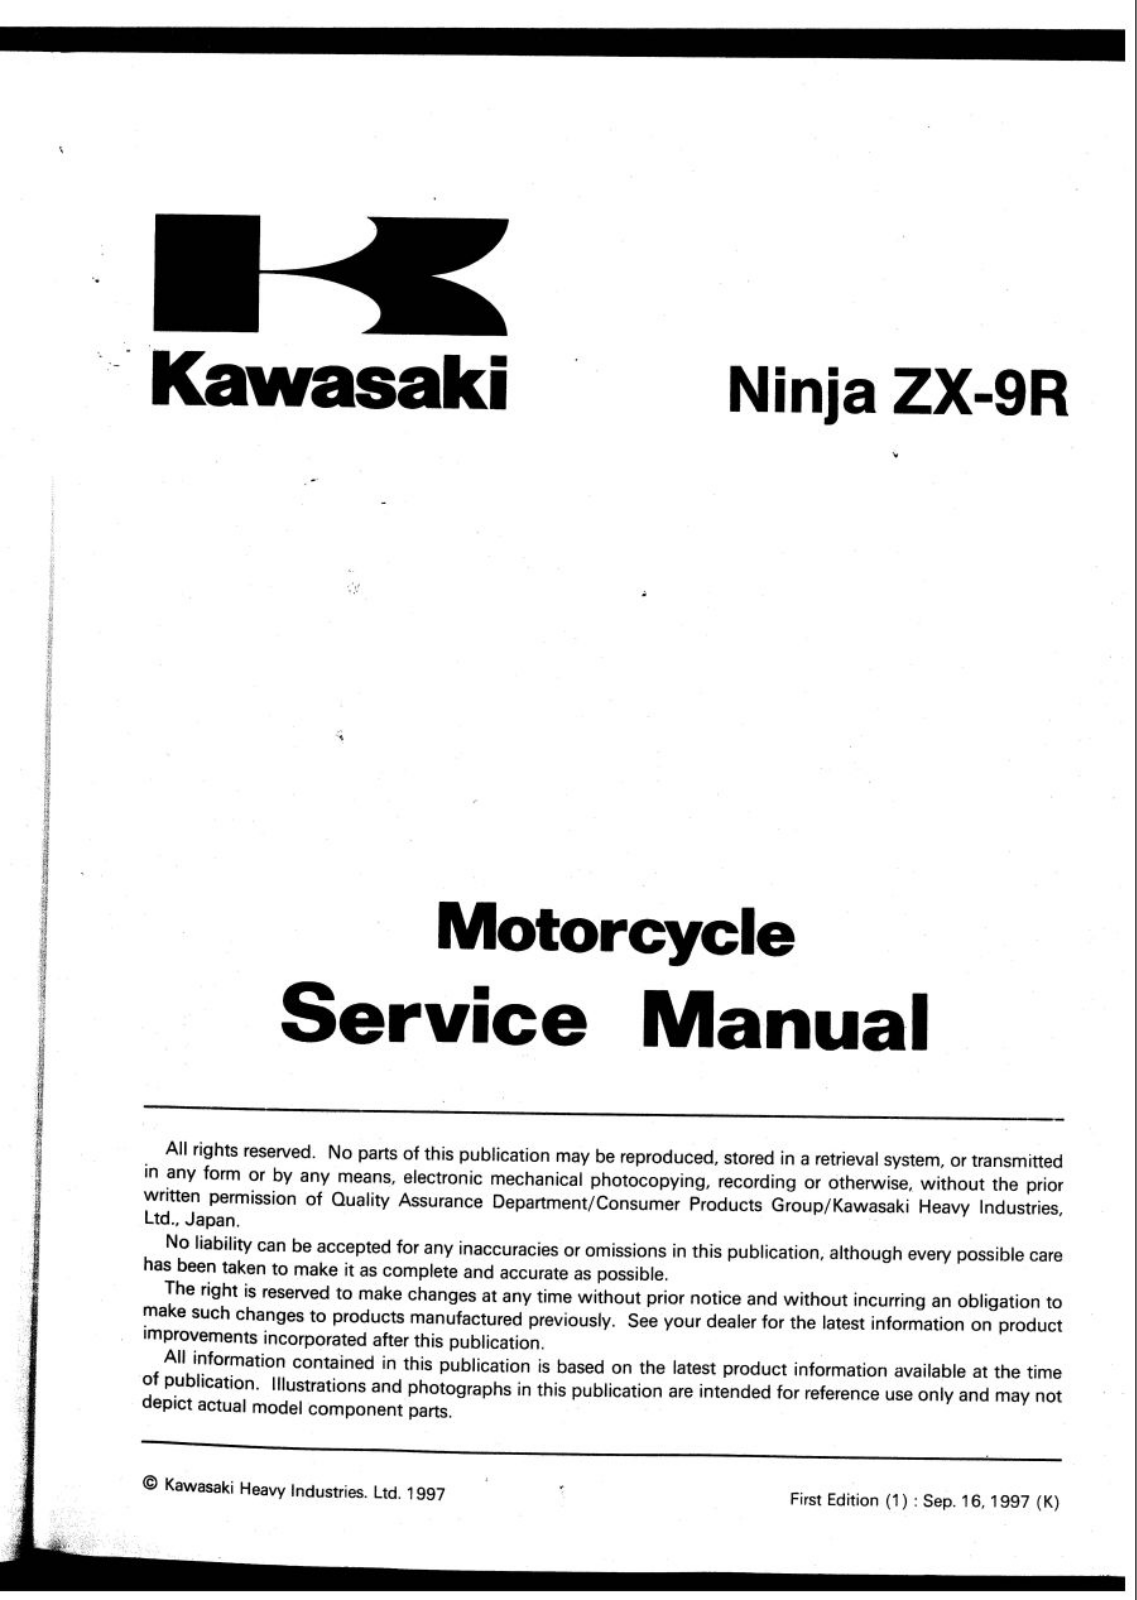 Kawasaki ZX-9R User Manual